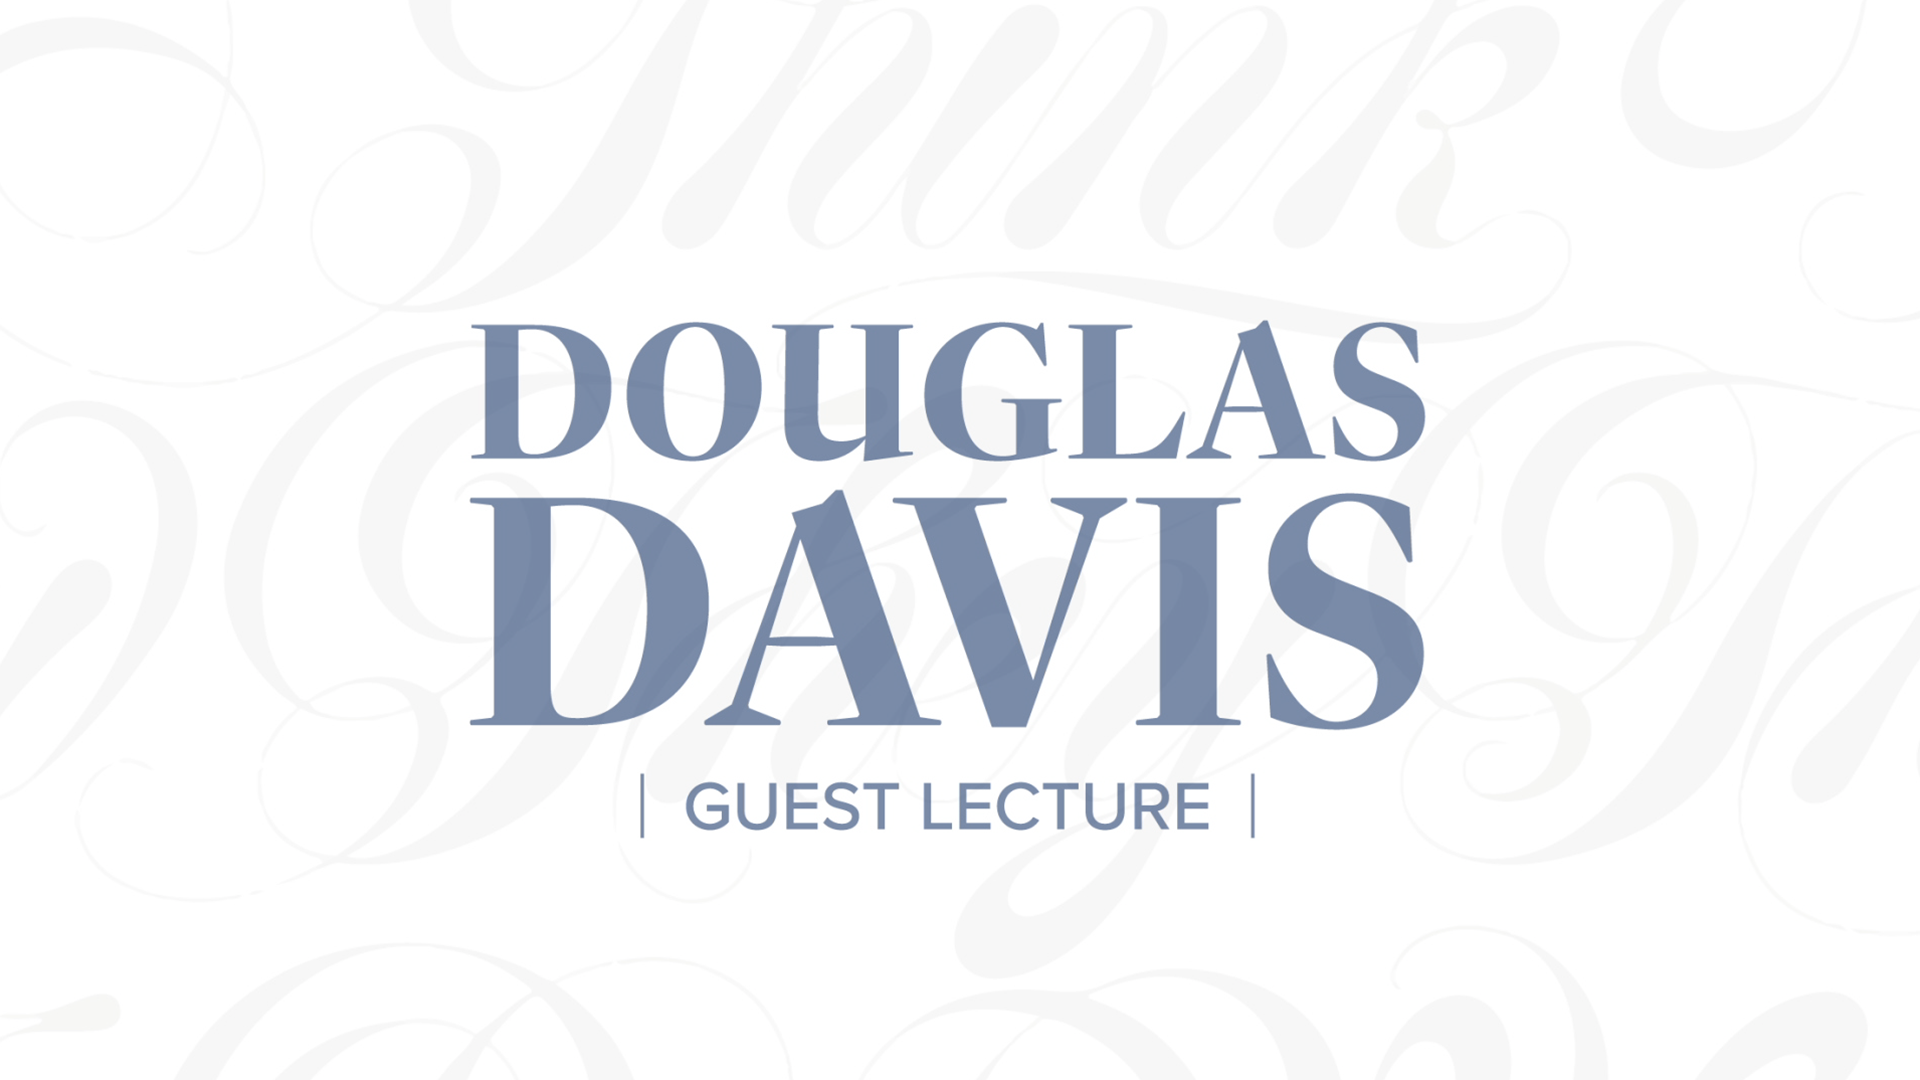 Douglas Davis guest lecture